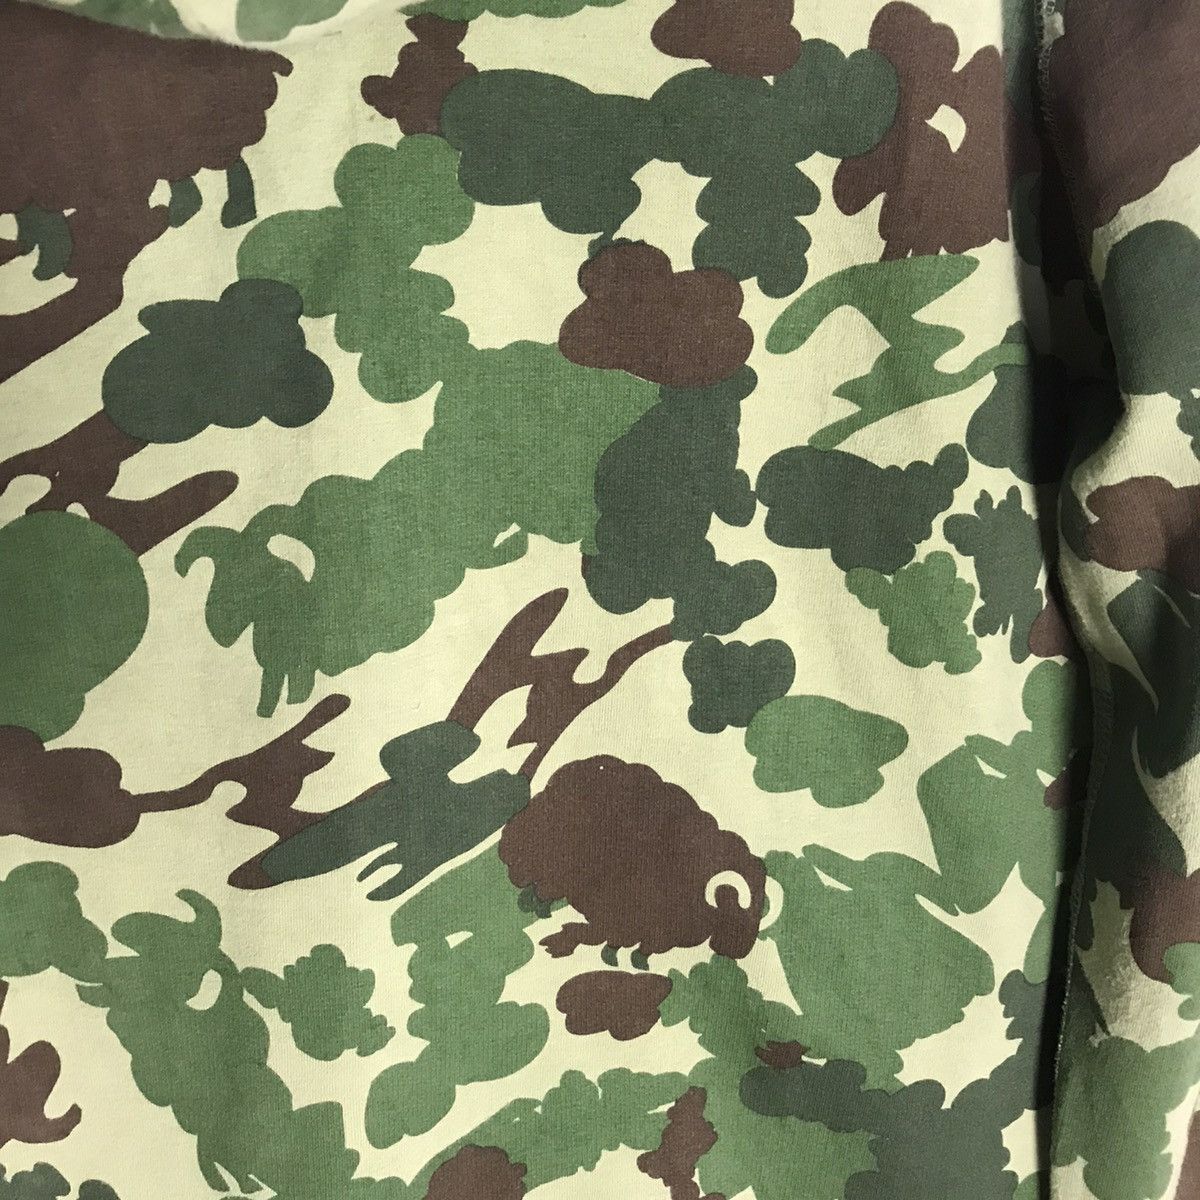 Beamsboy sheep camouflage patern zip up hoodie - 3